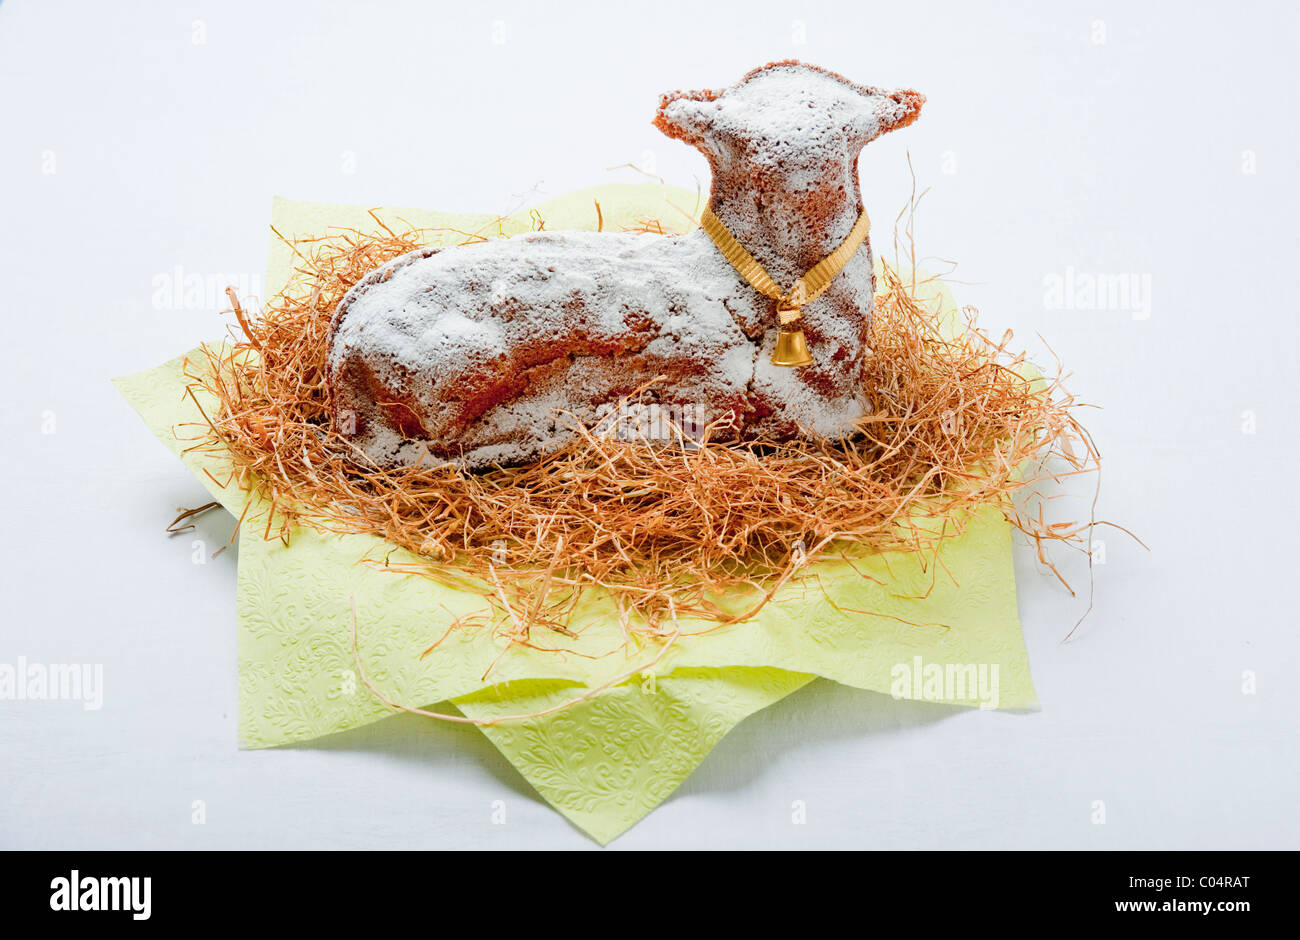 Traditionelle deutsche Osterlamm Lamm oder Osterlamm geformt Biskuit, bestäubt mit Puderzucker und sitzt auf einem Bett aus Heu Stockfoto